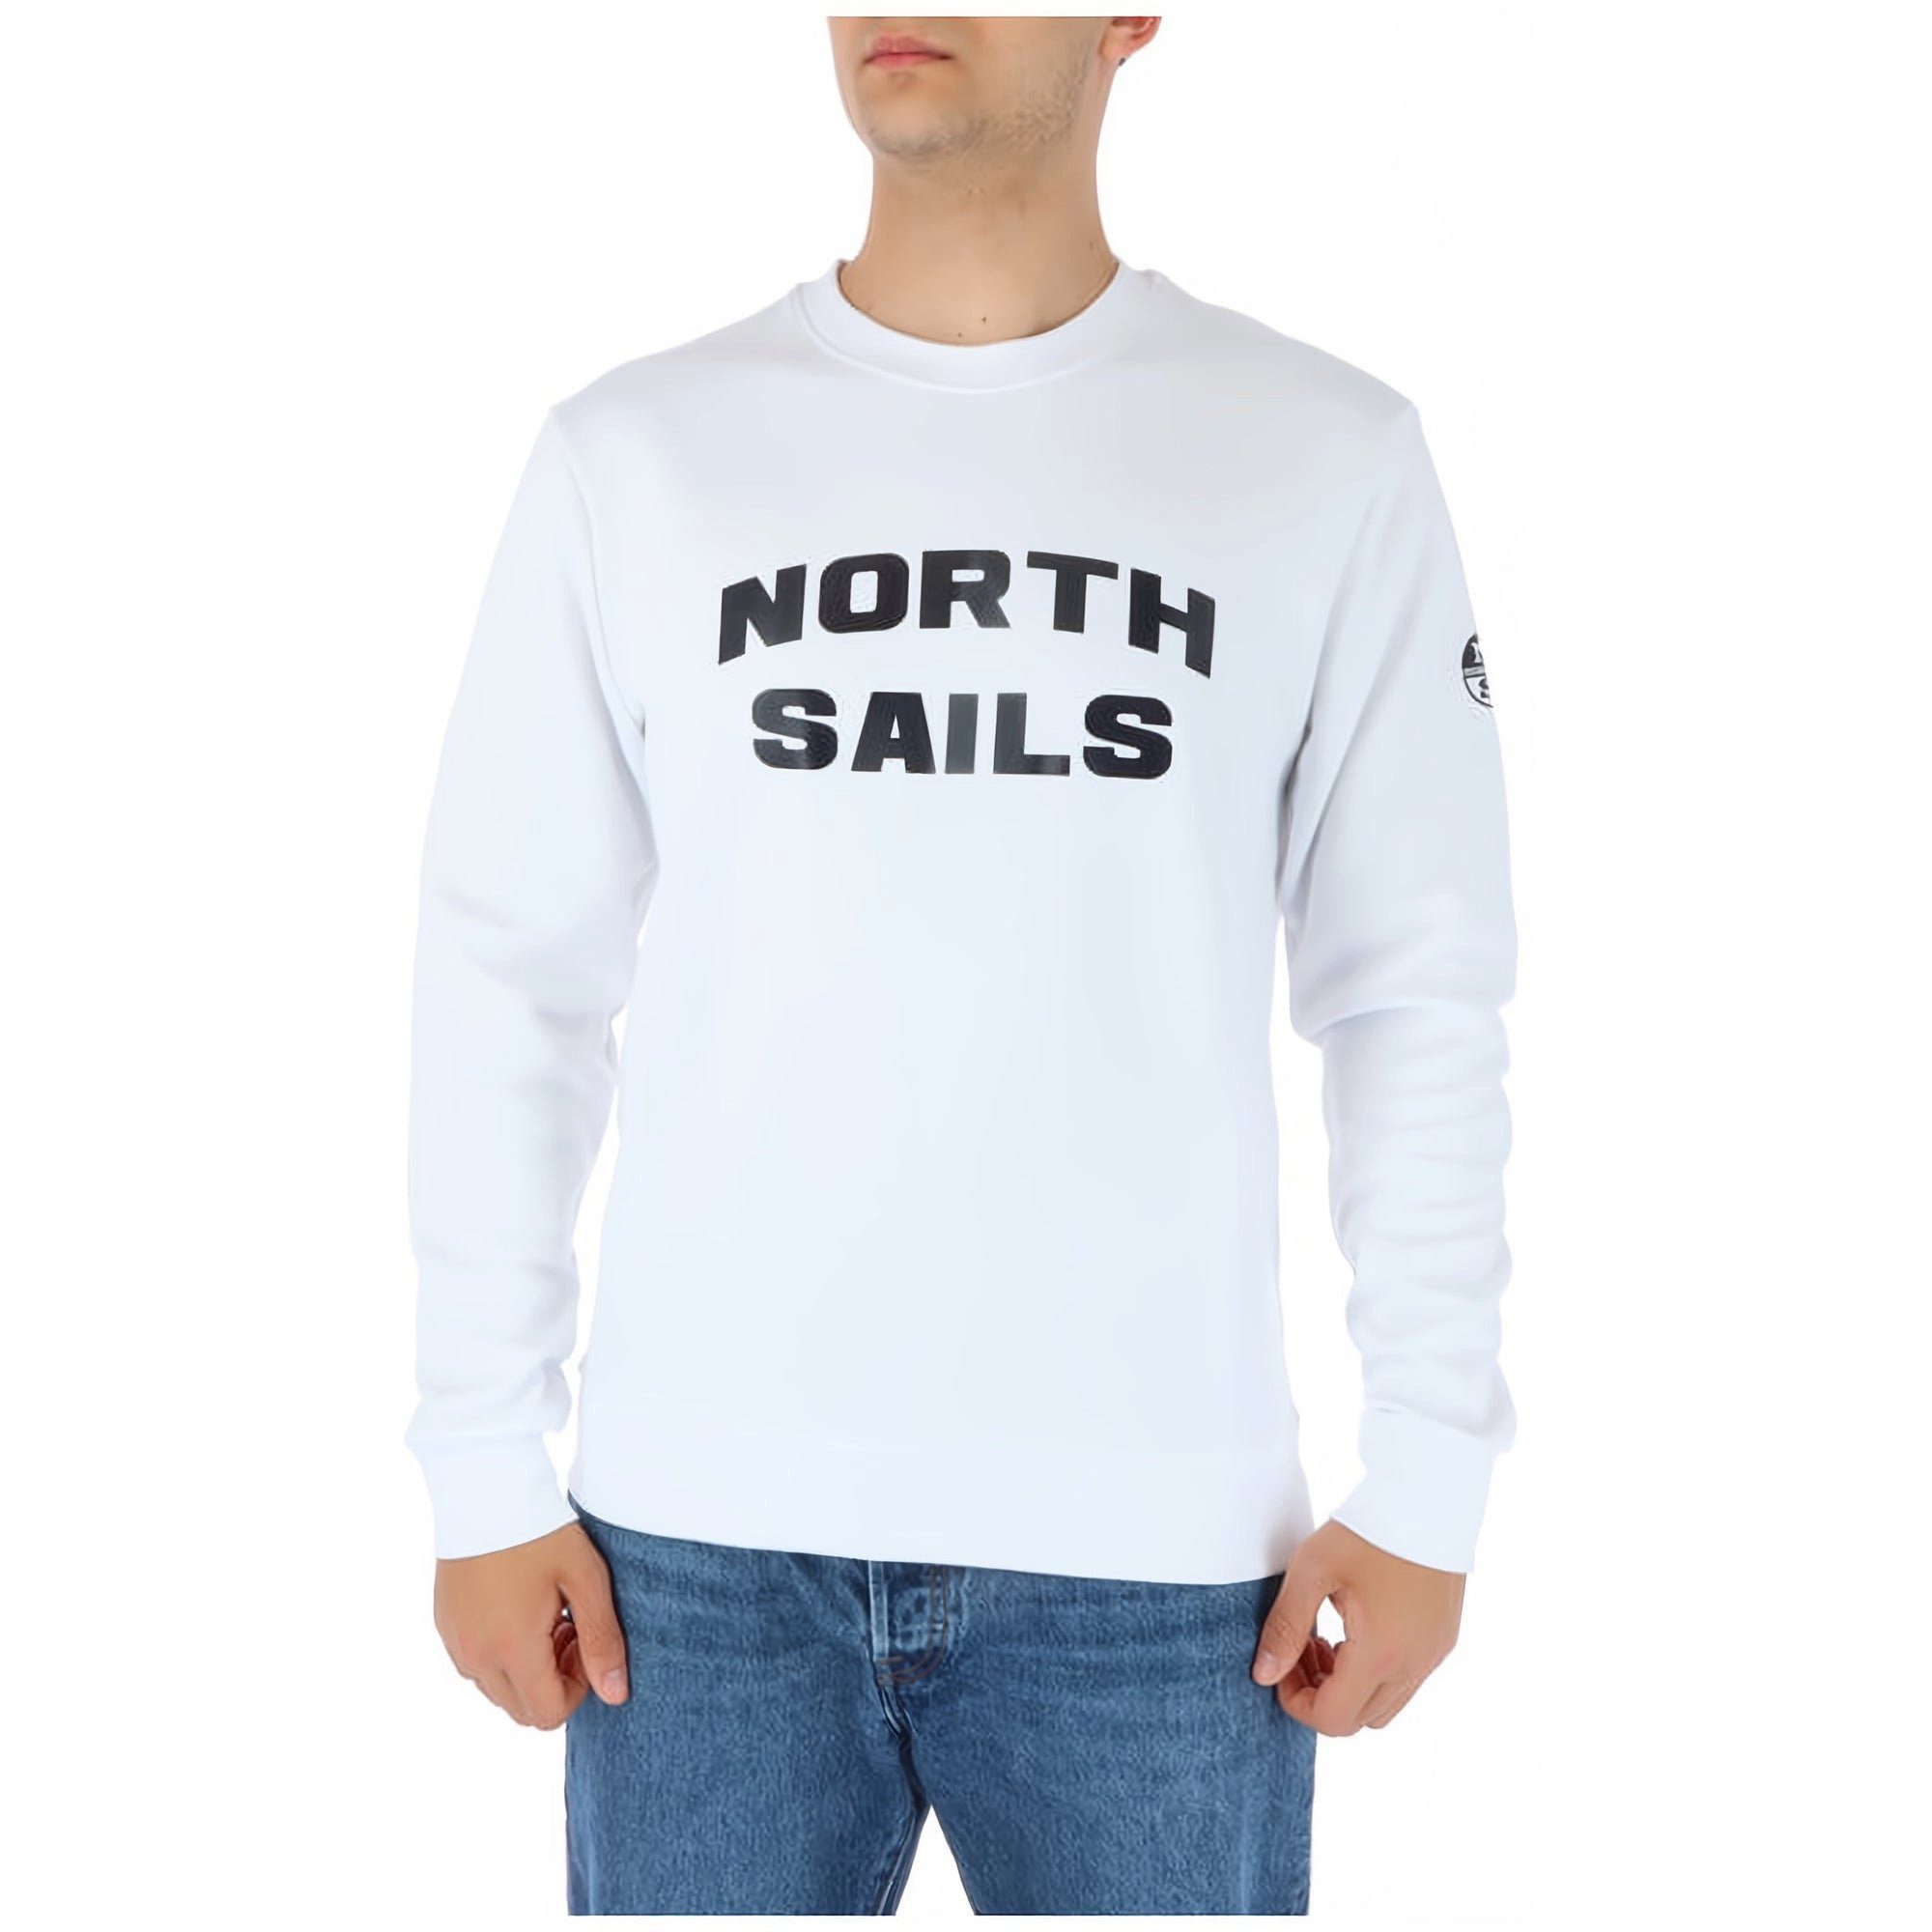 Jetzt von, Sails den Herren Sweatshirt North North Sails modische Komfort Sweatshirt und bestellen, genießen!